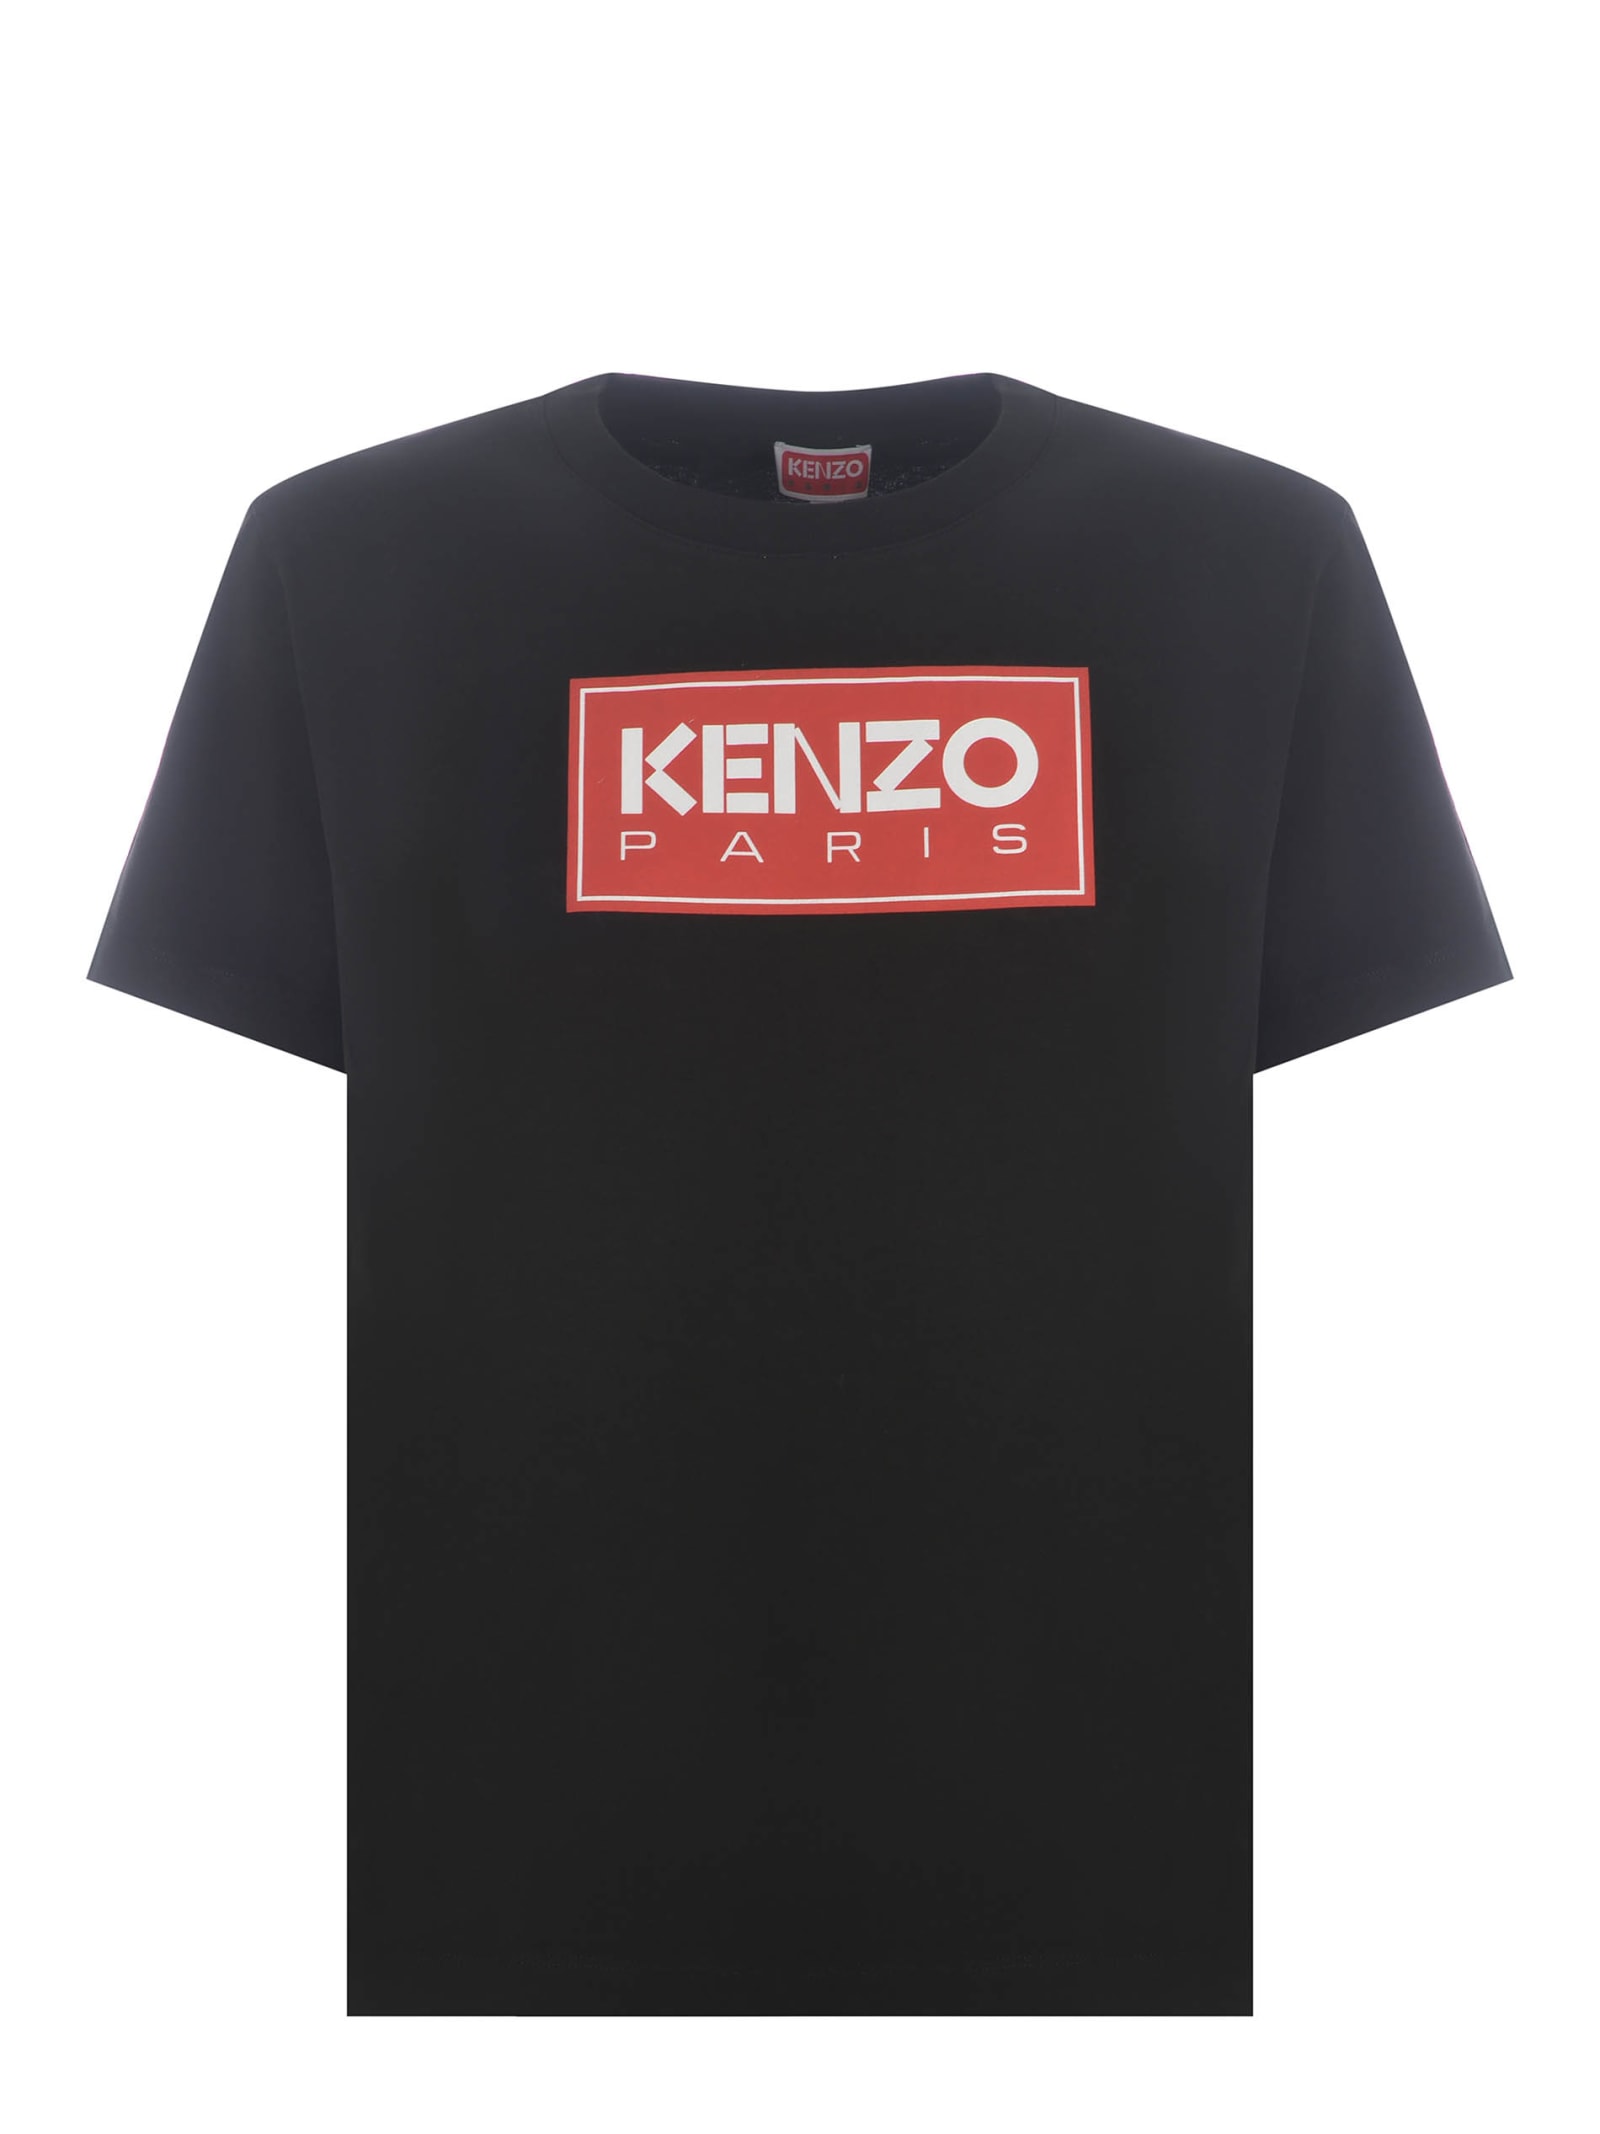 Kenzo T-shirt Kenzo kenzo Paris In Cotton